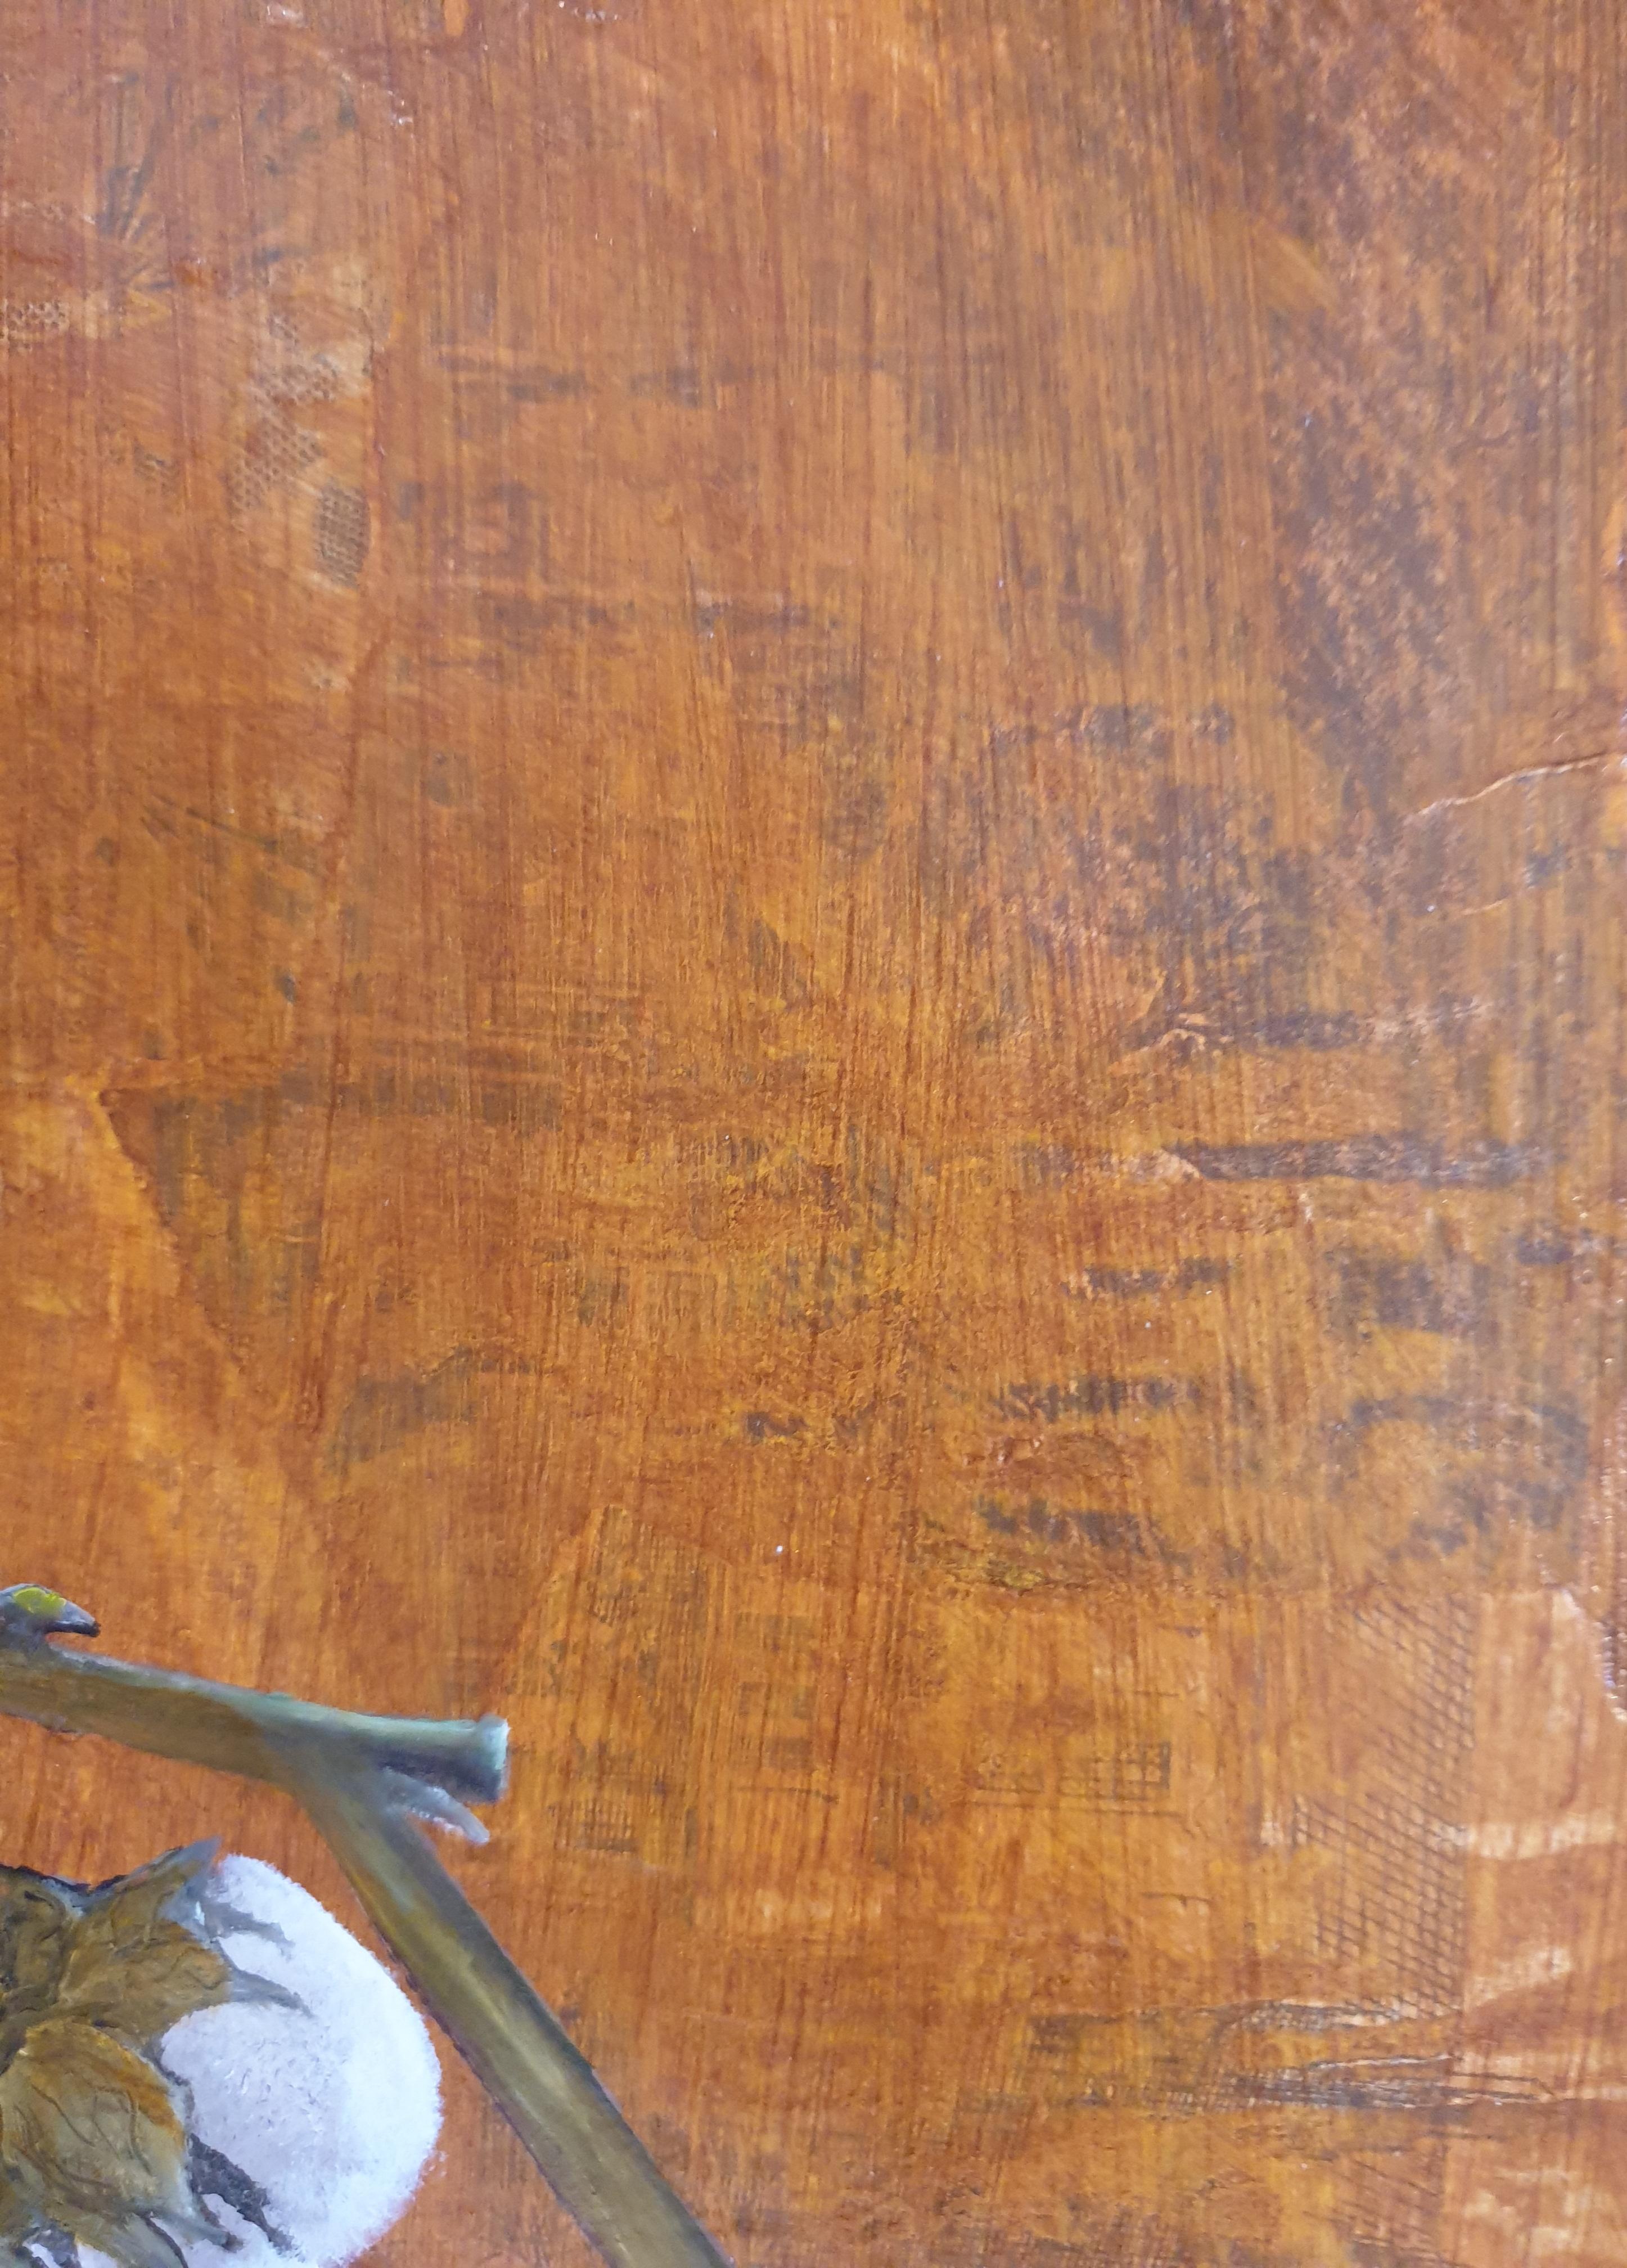 Zeitgenössische botanische Mischtechniken, Öl und Acryl auf Karton des niederländischen Künstlers Menno Modderman,  signiert und datiert 2022 unten rechts.

Menno, der seit mehreren Jahren als Künstler in seinem Atelier in Cotignac in Südfrankreich